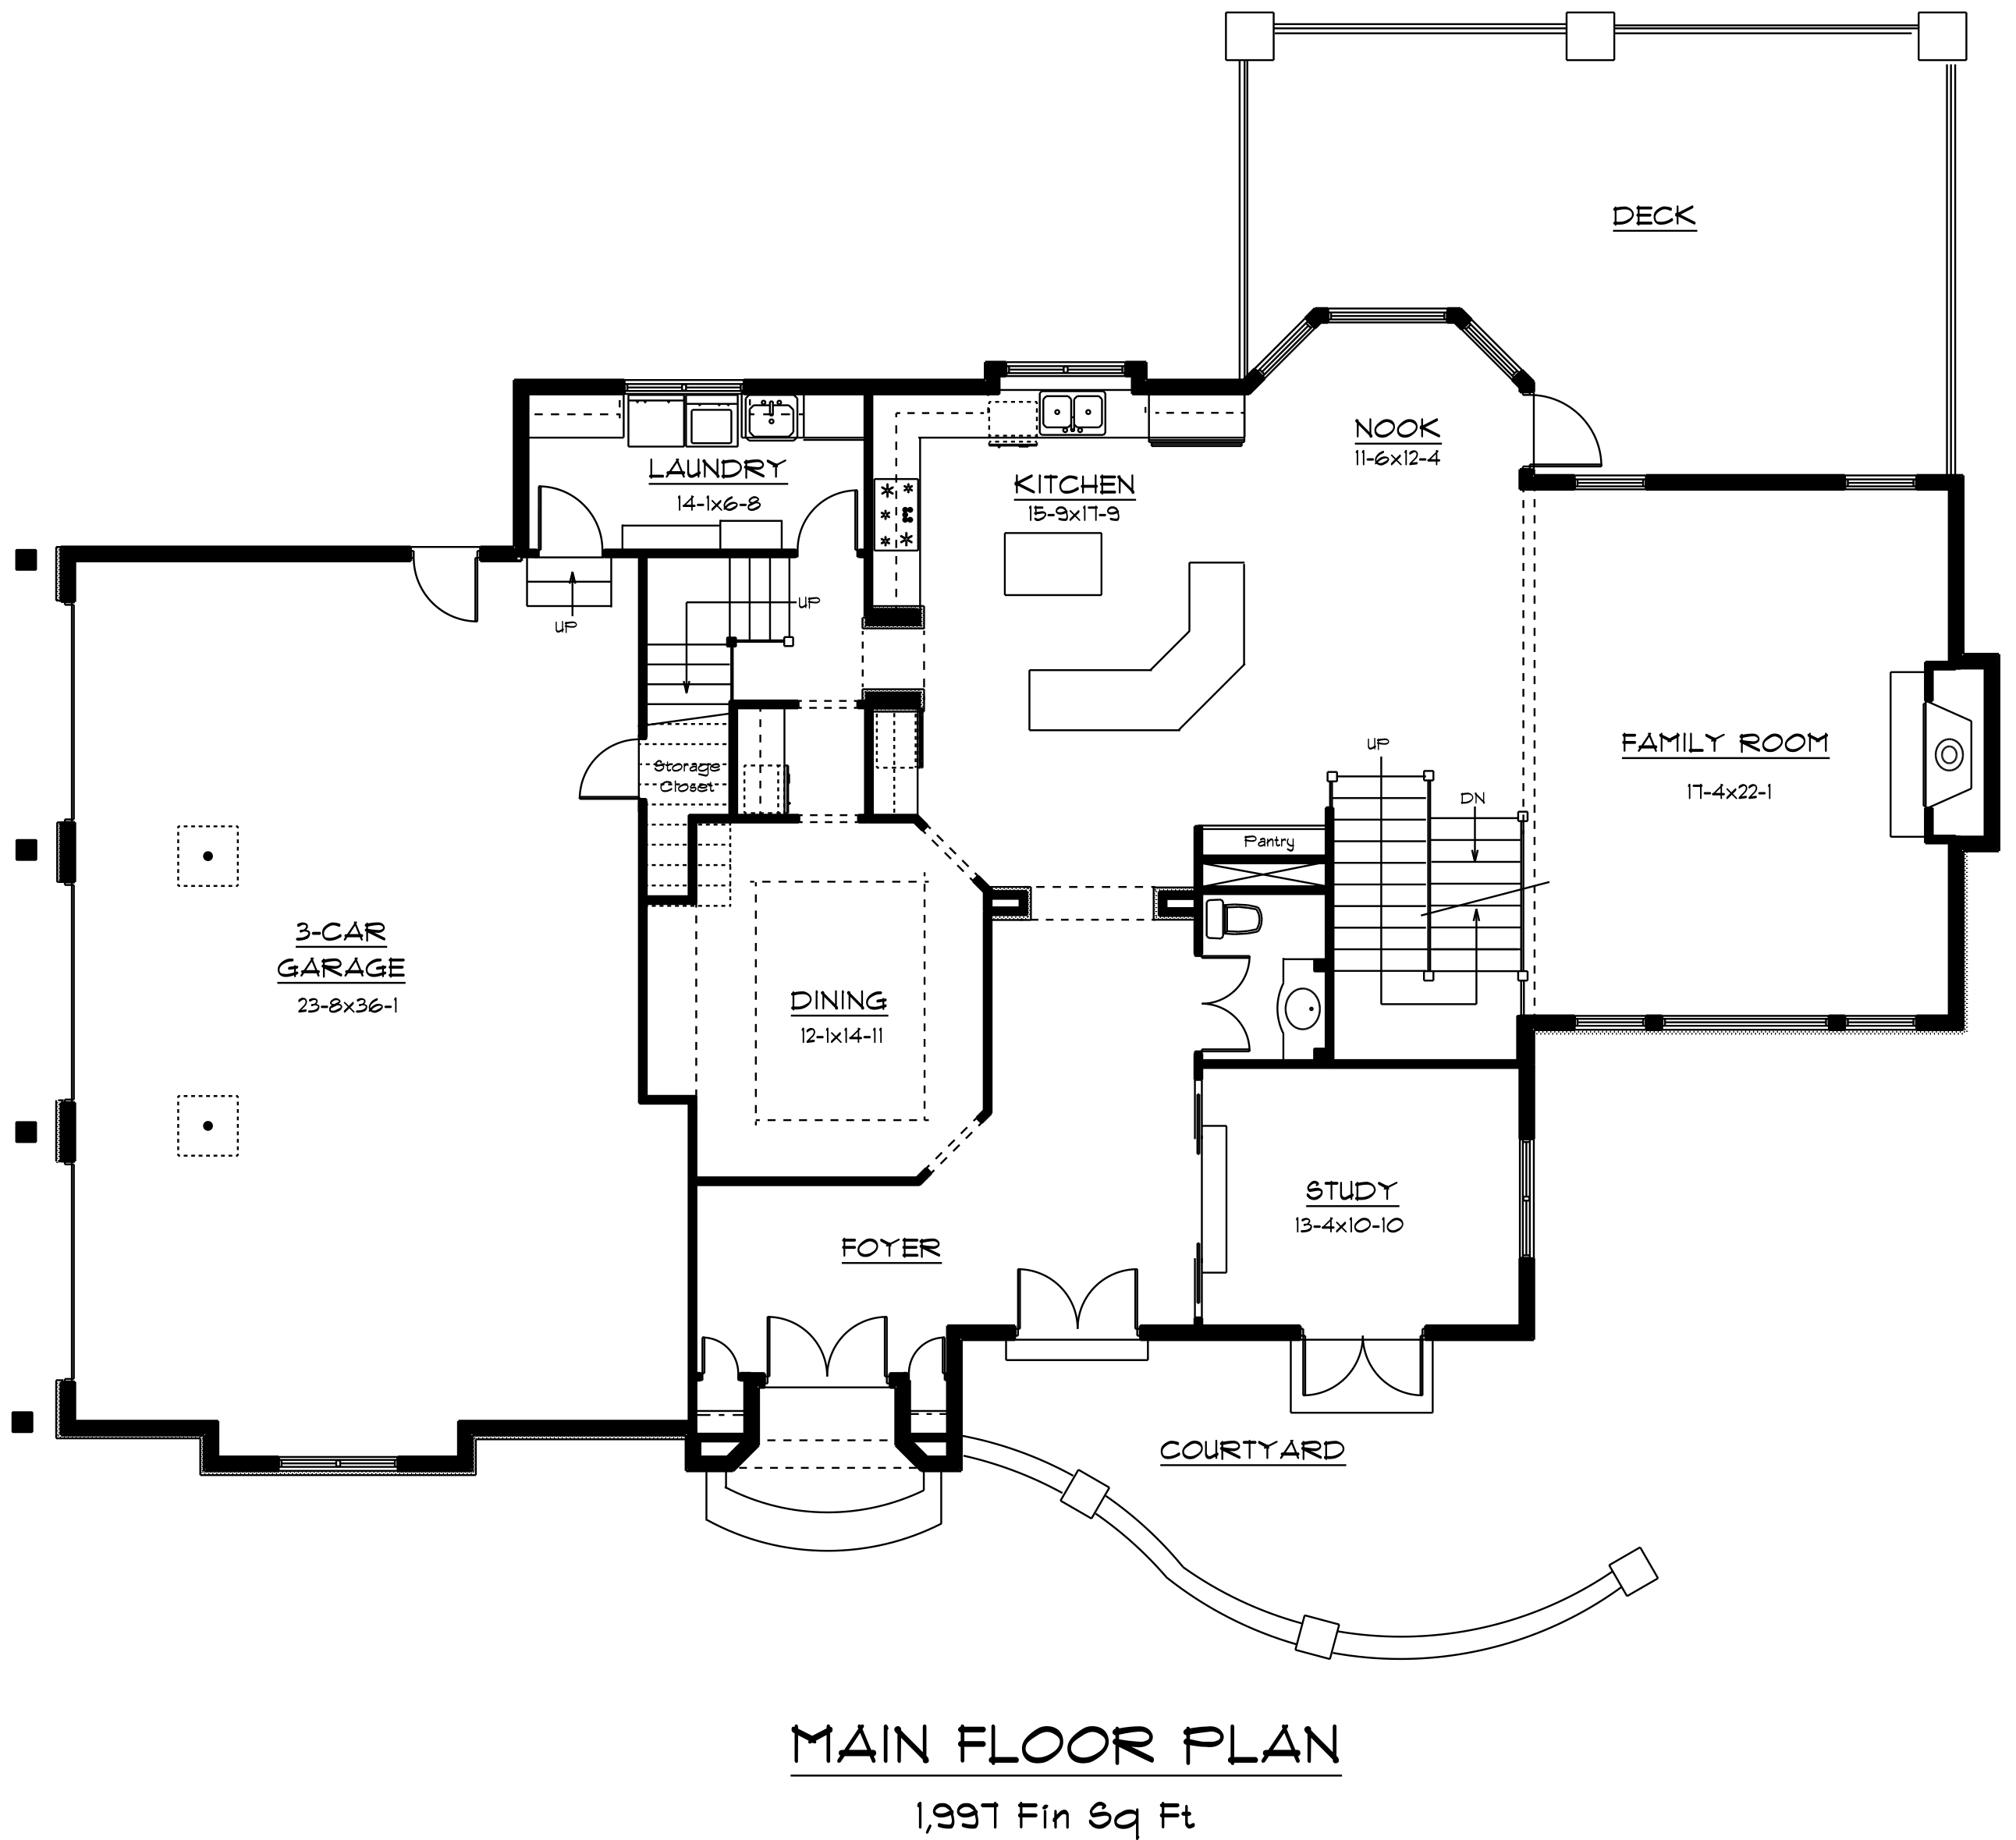 p1-the-cottage-main-floor-r-c